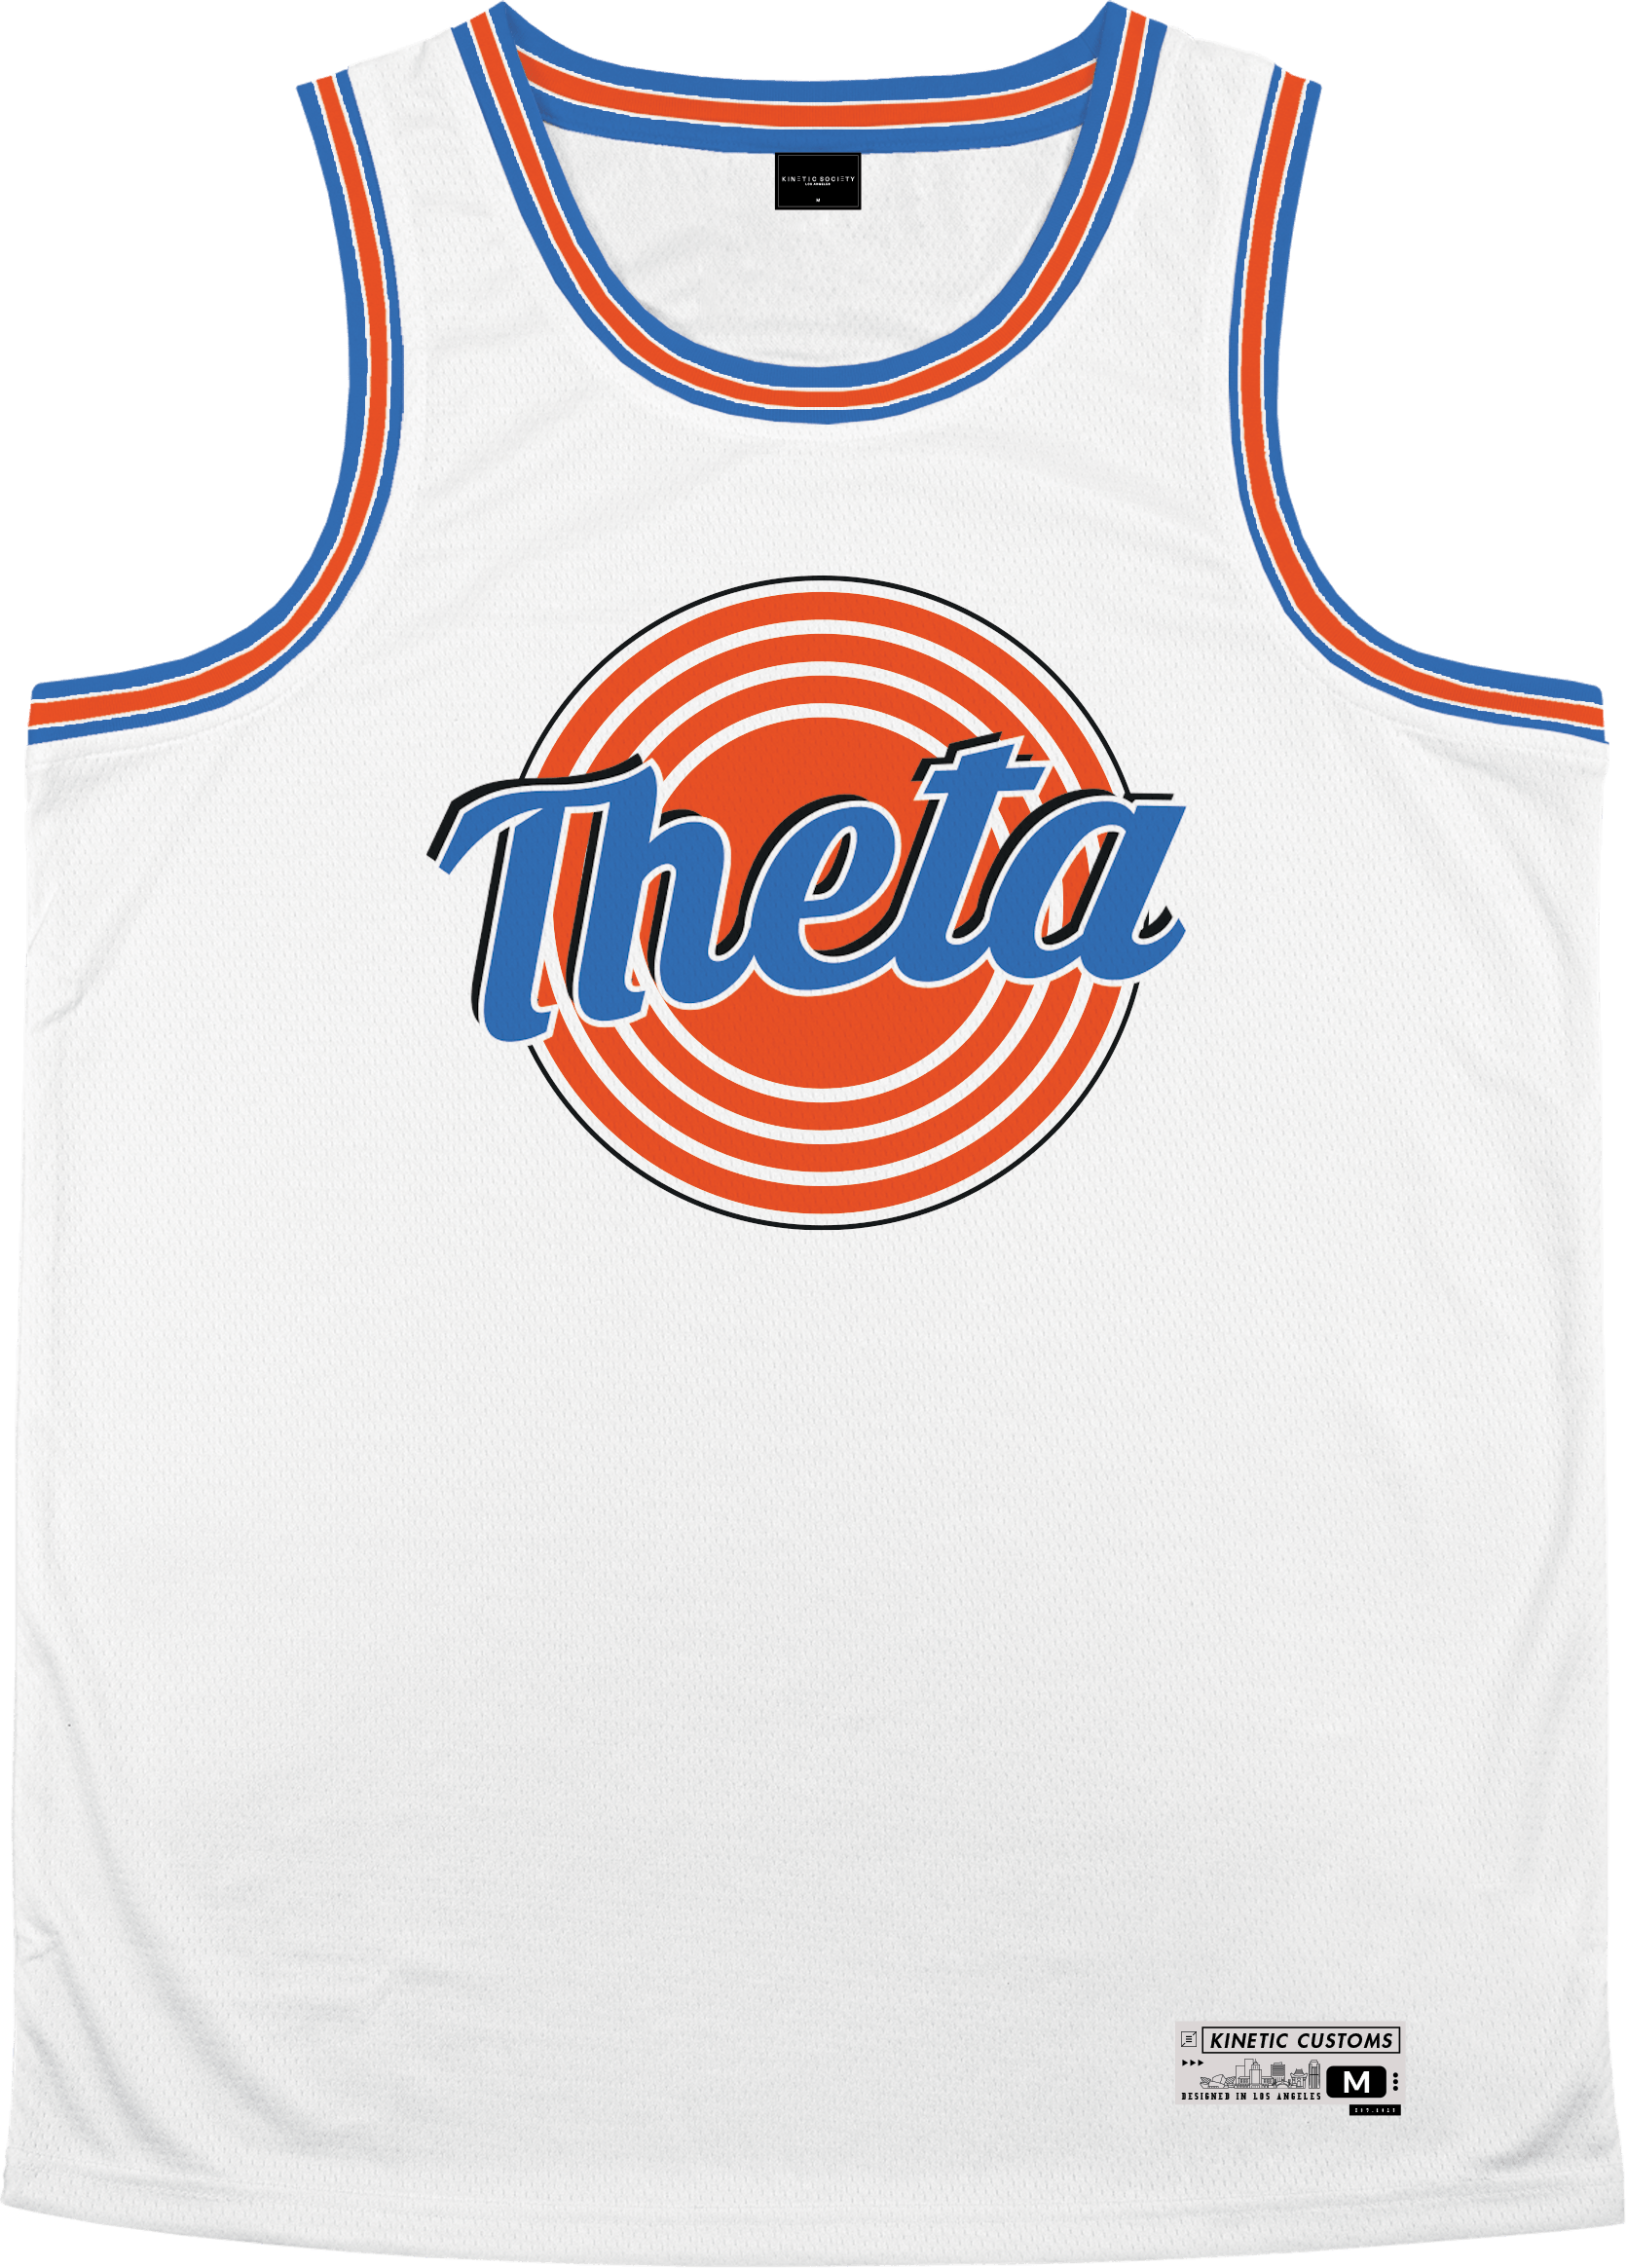 Kappa Alpha Theta - Vintage Basketball Jersey - Kinetic Society